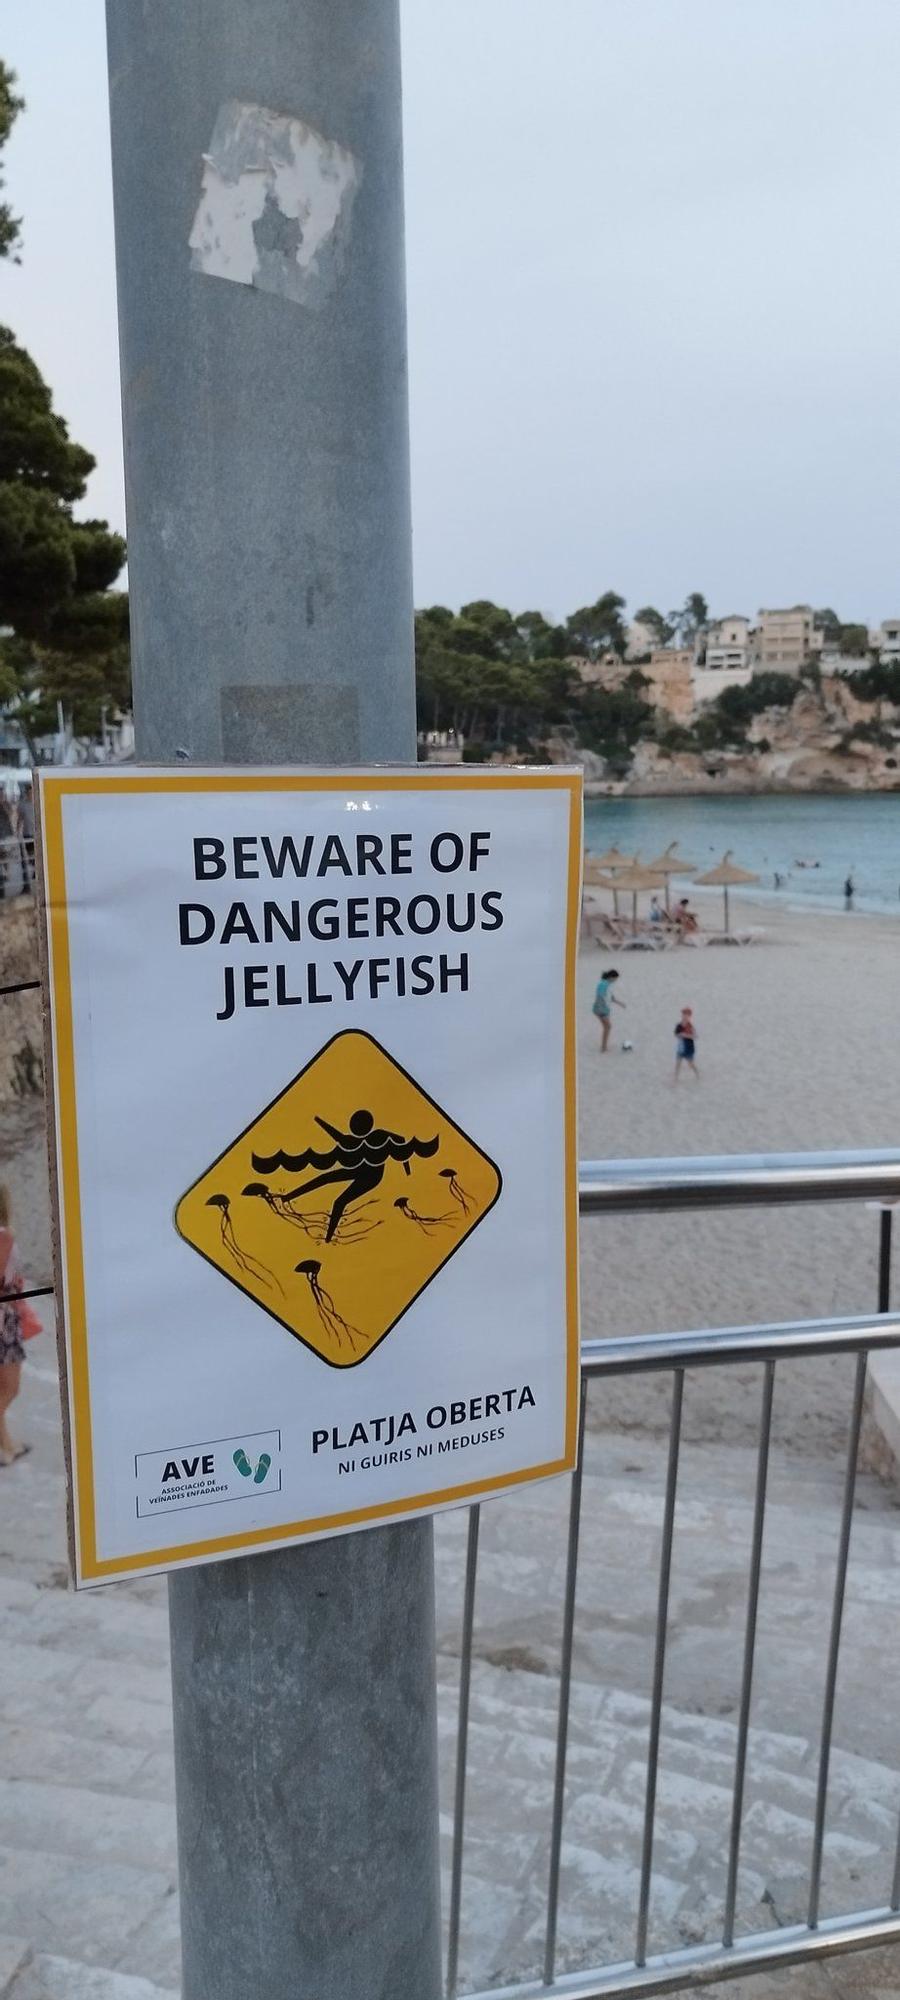 FOTOS | Protesta contra la masificación en las playas de Mallorca: en inglés, "playa cerrada"; en catalán, "playa abierta"